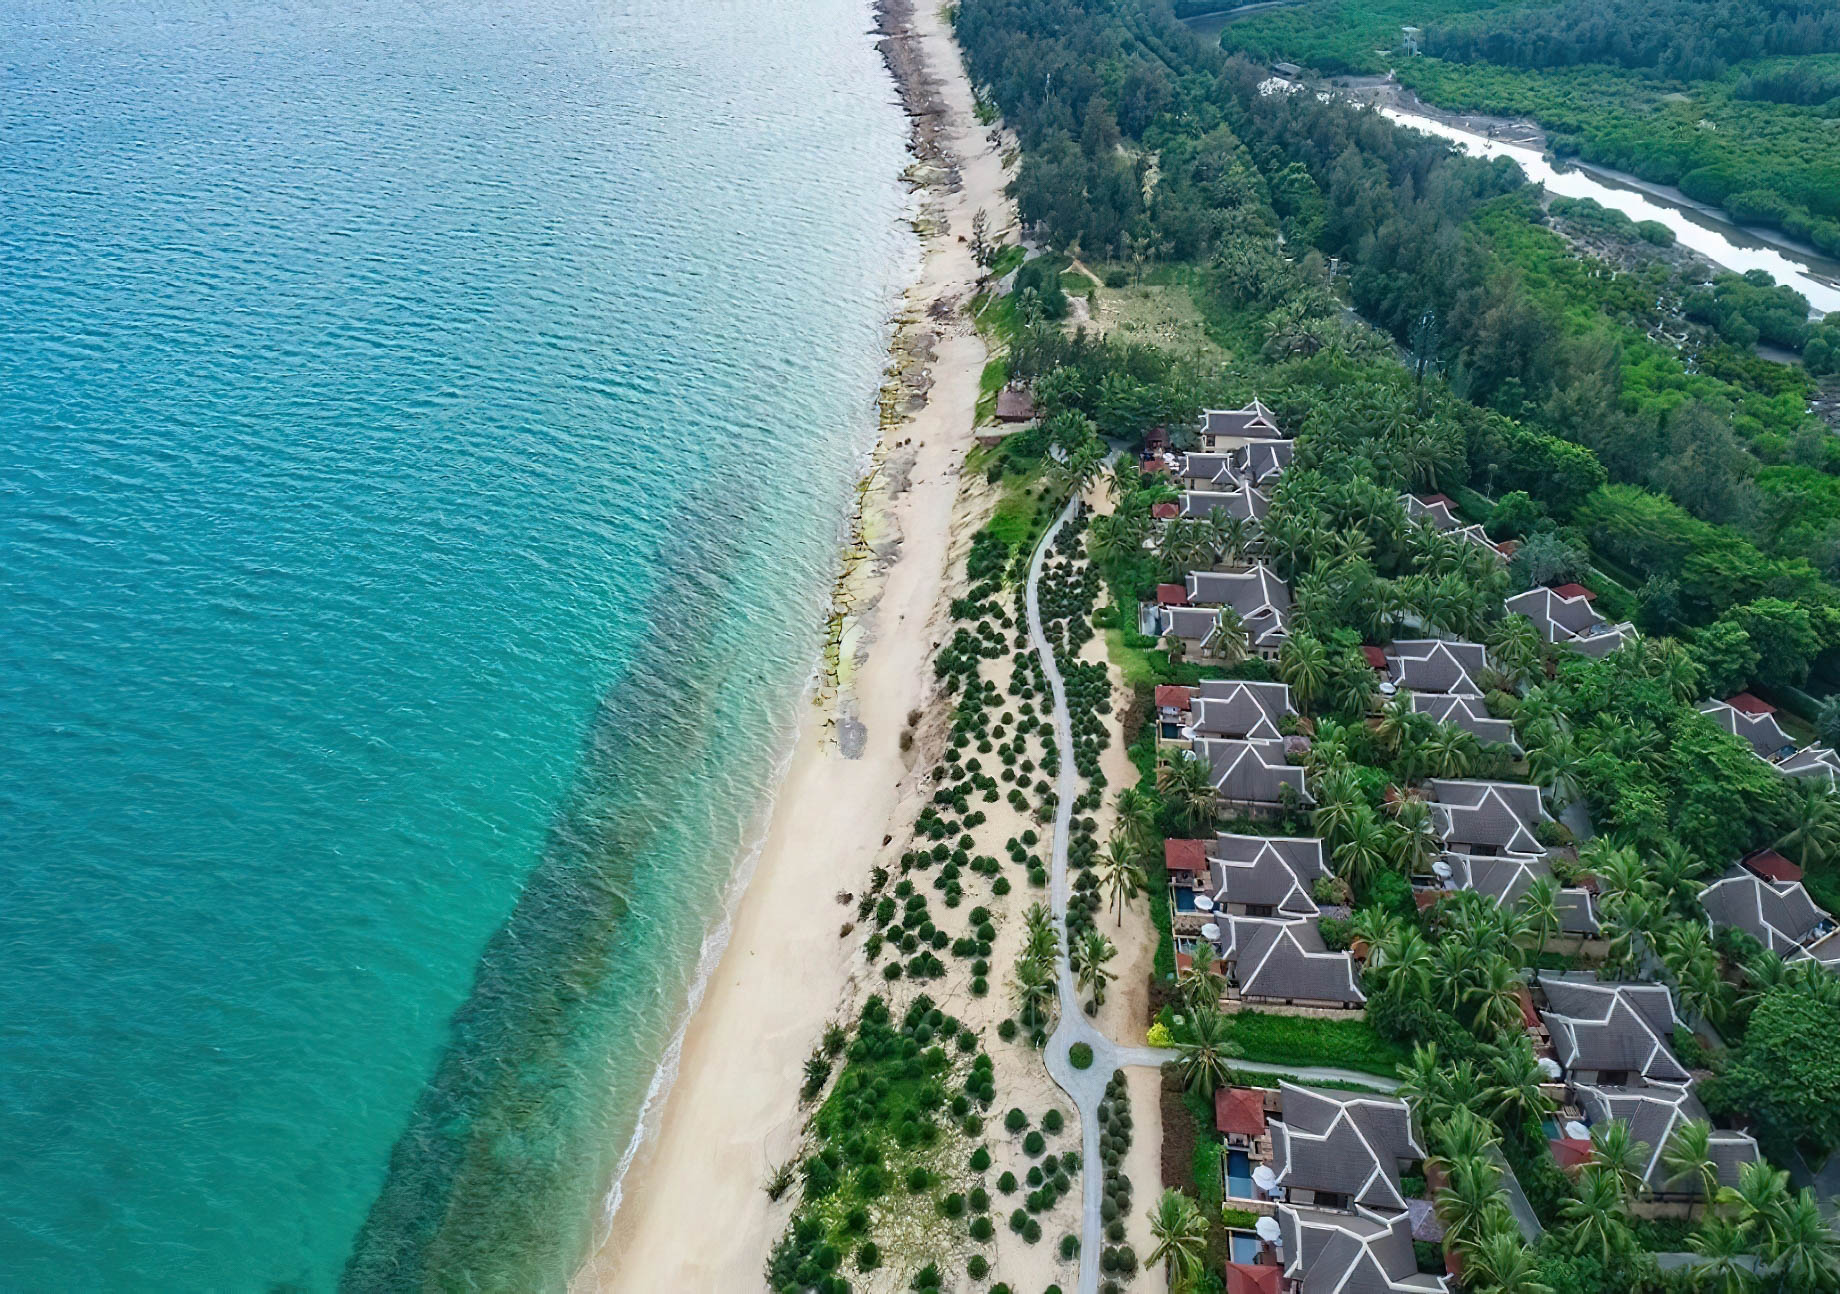 The Ritz-Carlton Sanya, Yalong Bay Hotel – Hainan, China – Hotel Villas Aerial View